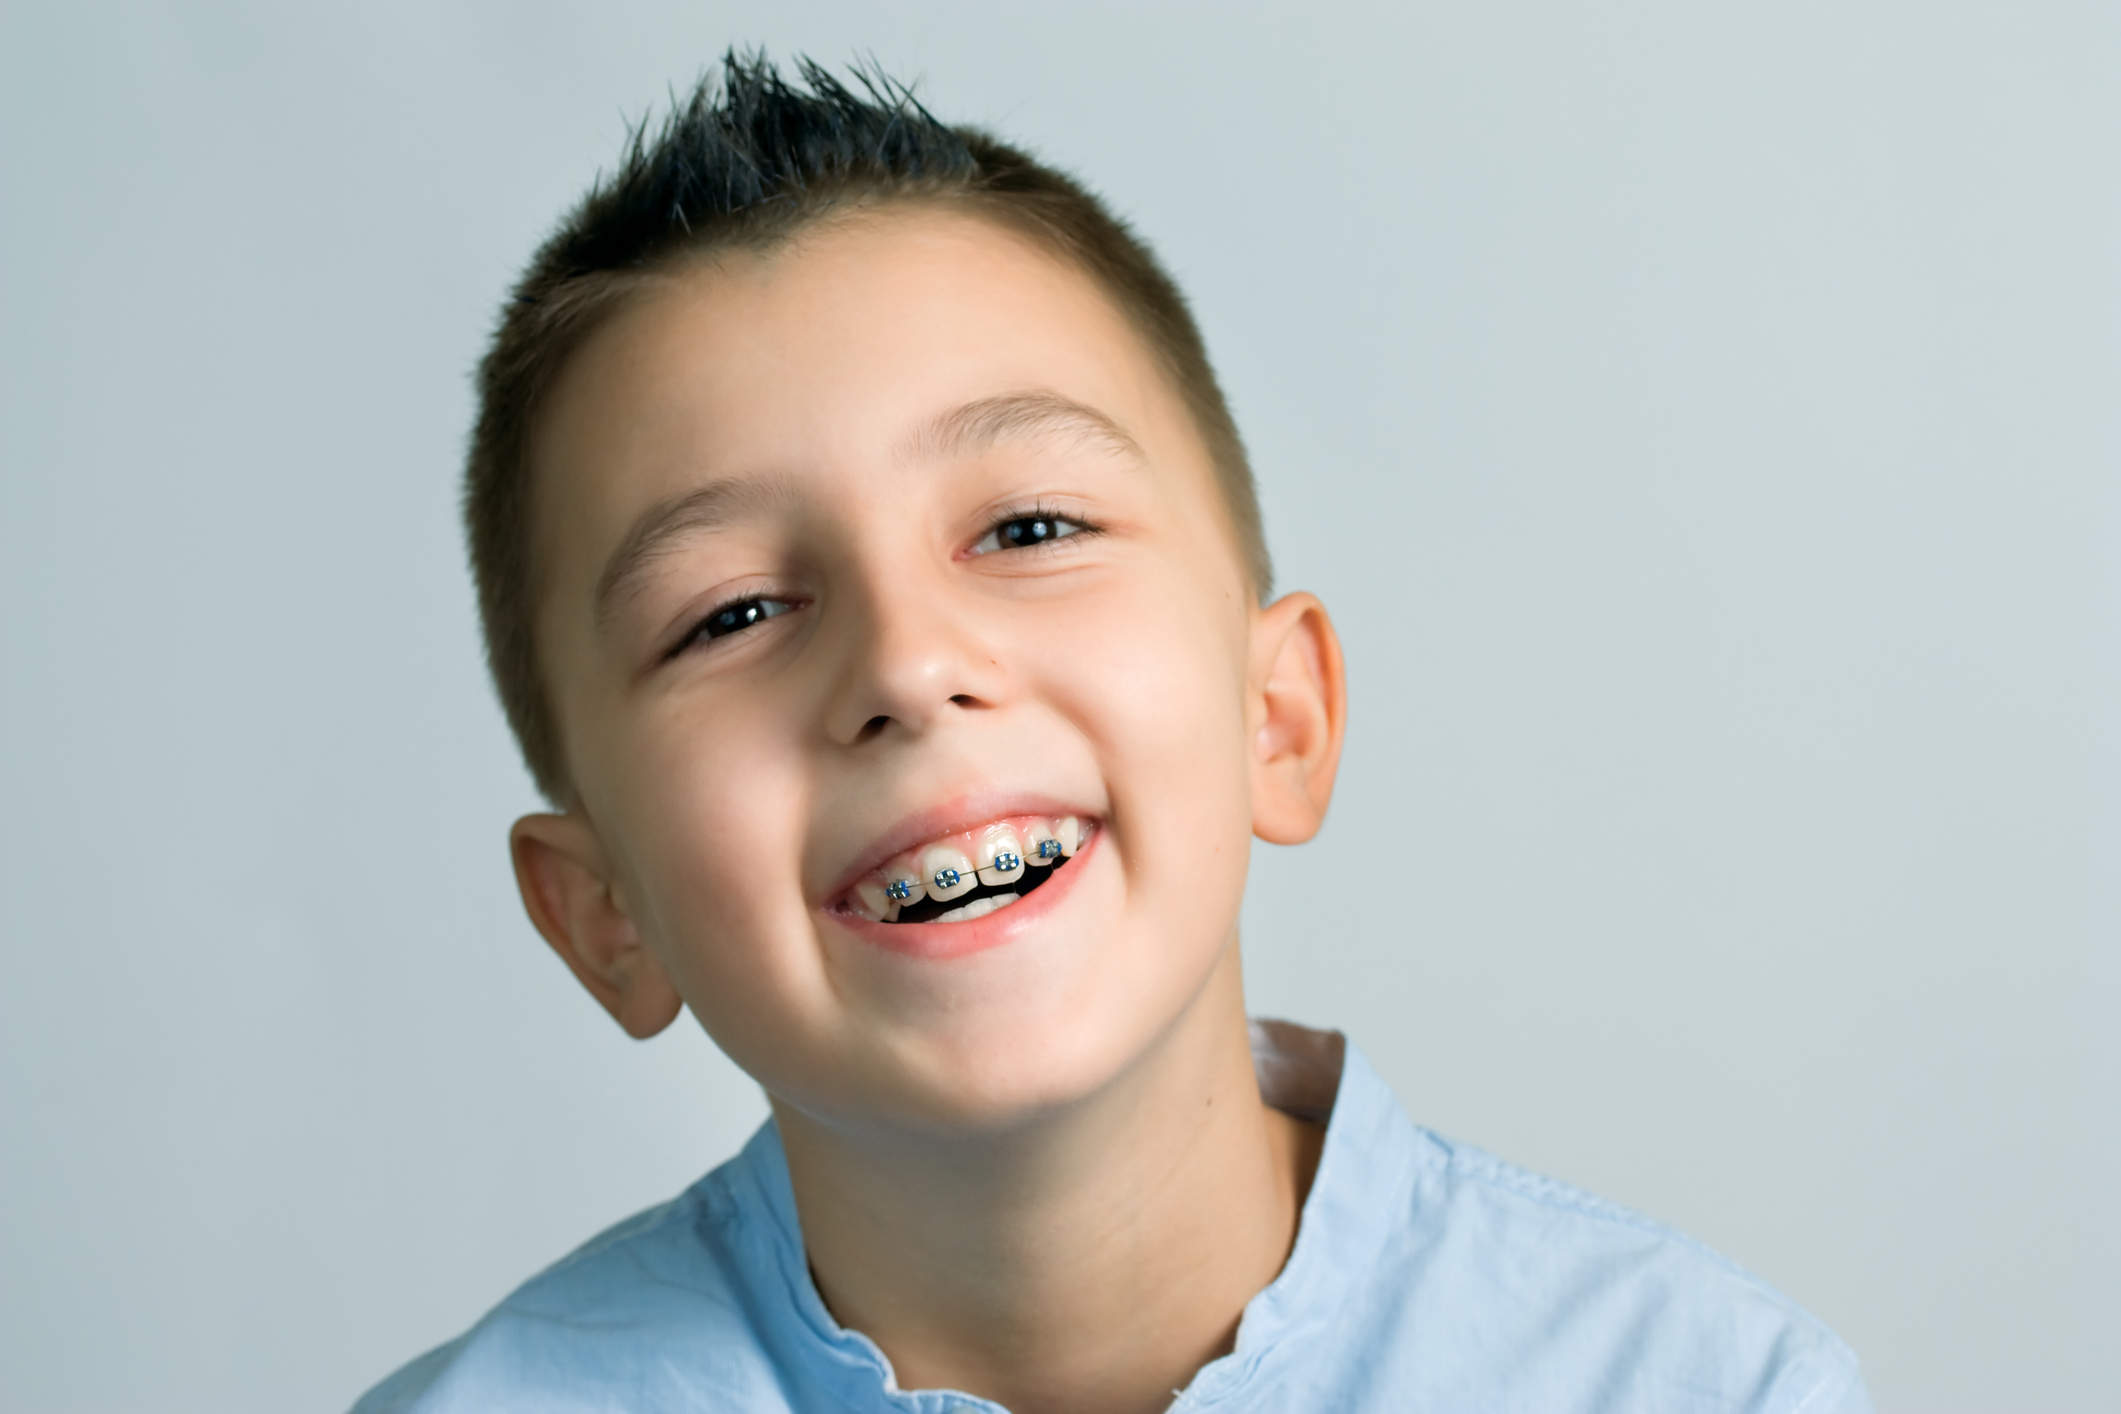 happy kid with braces.